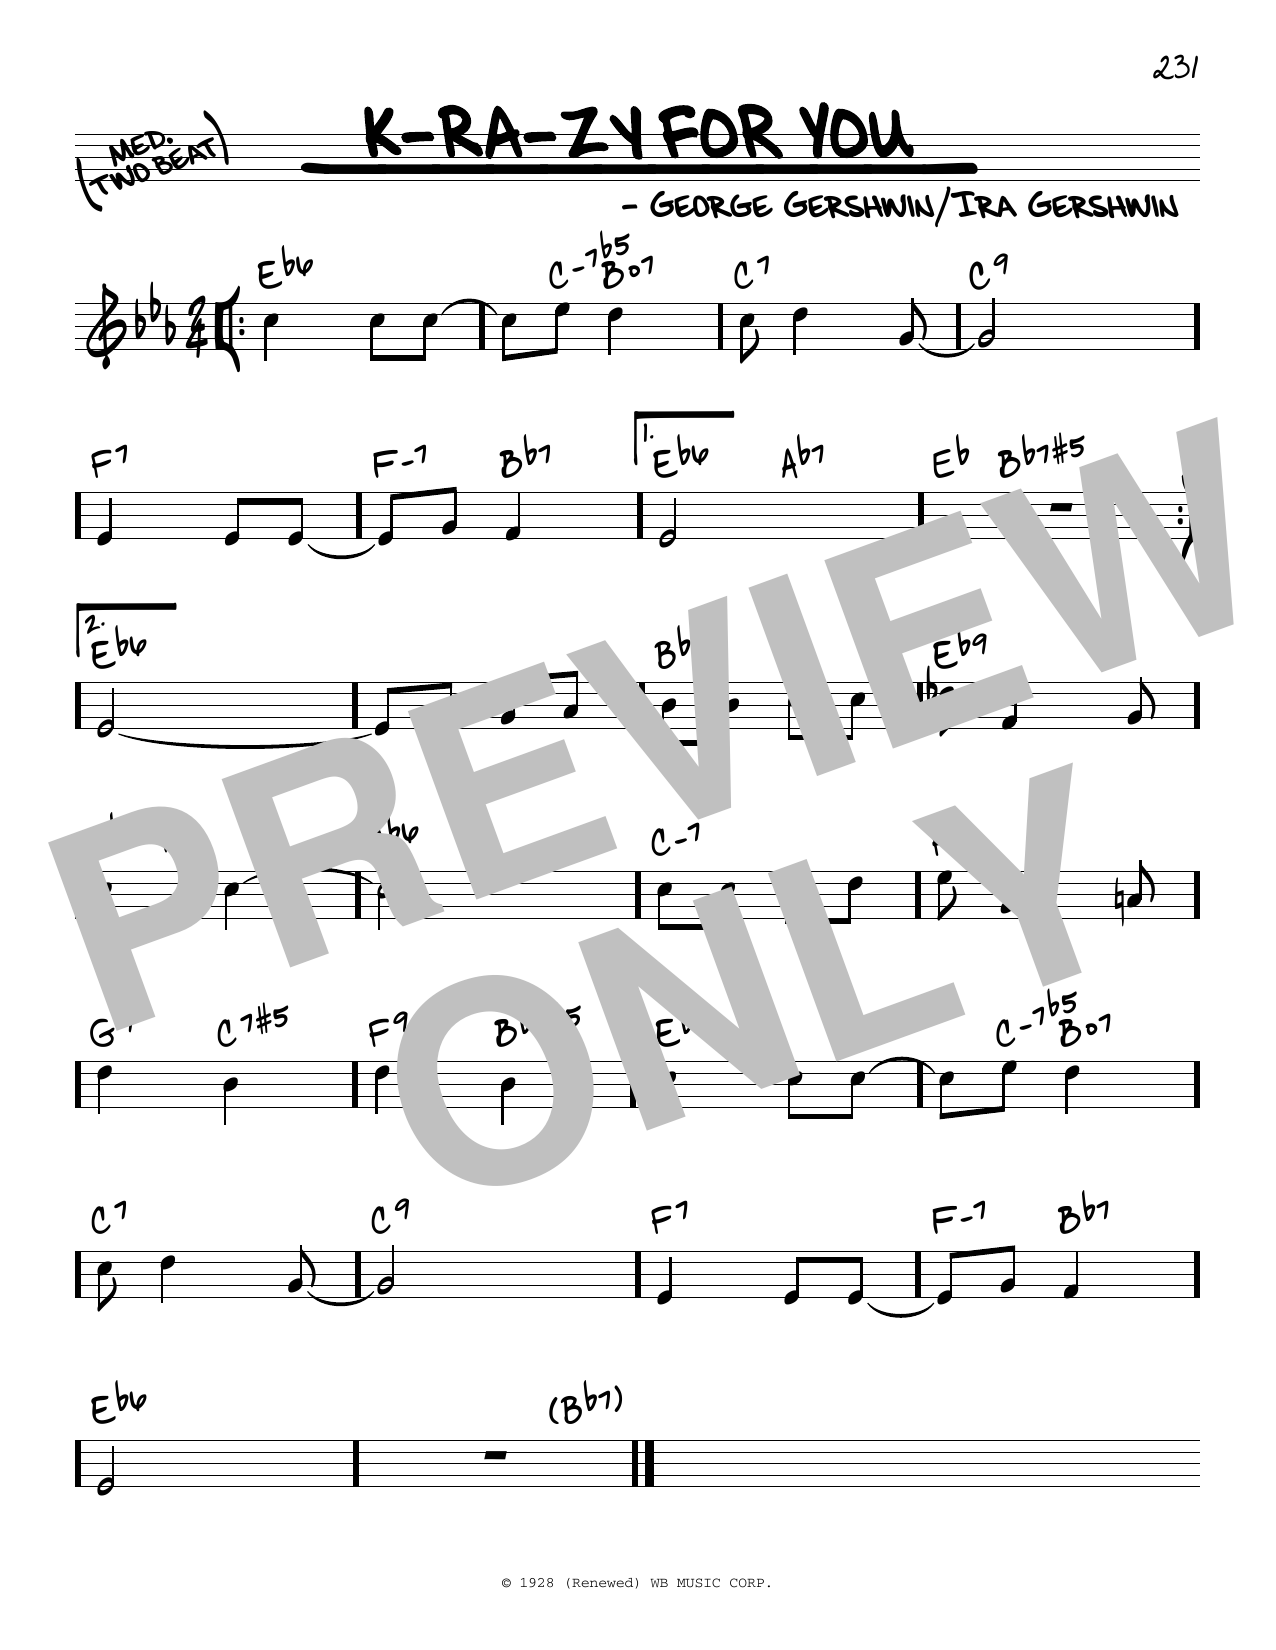 Download George Gershwin & Ira Gershwin K-ra-zy For You Sheet Music